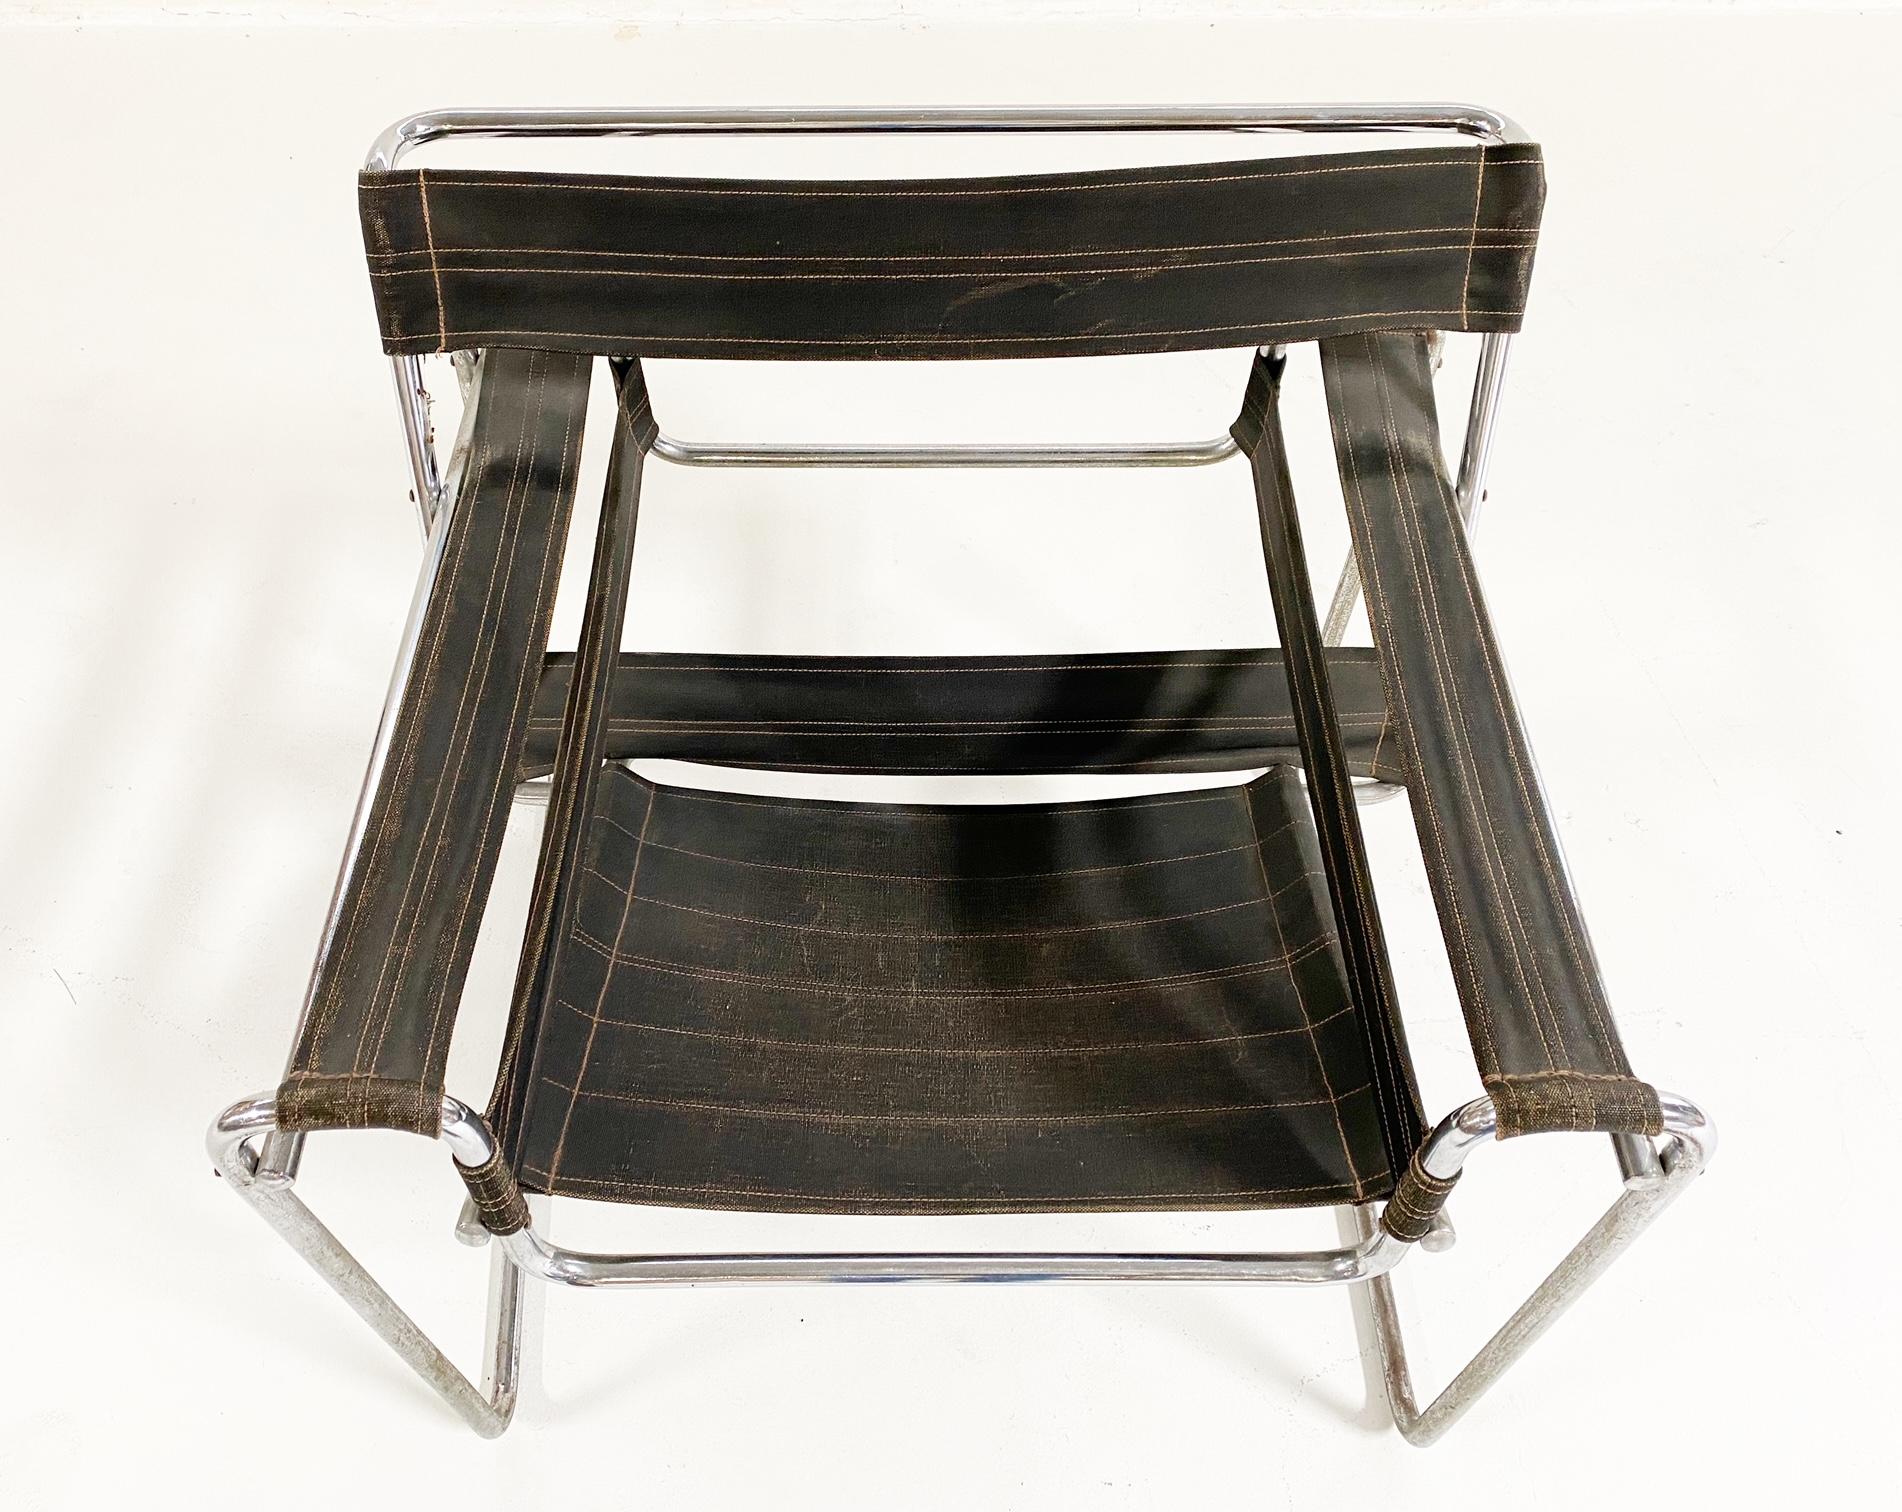 Il s'agit d'une première édition de Wassily du fabricant berlinois Standard-Möbel. Il présente la toile noire originale d'Eisengarn. Un design vraiment emblématique, qui mériterait de figurer dans un musée.

Le modèle de cette chaise est le